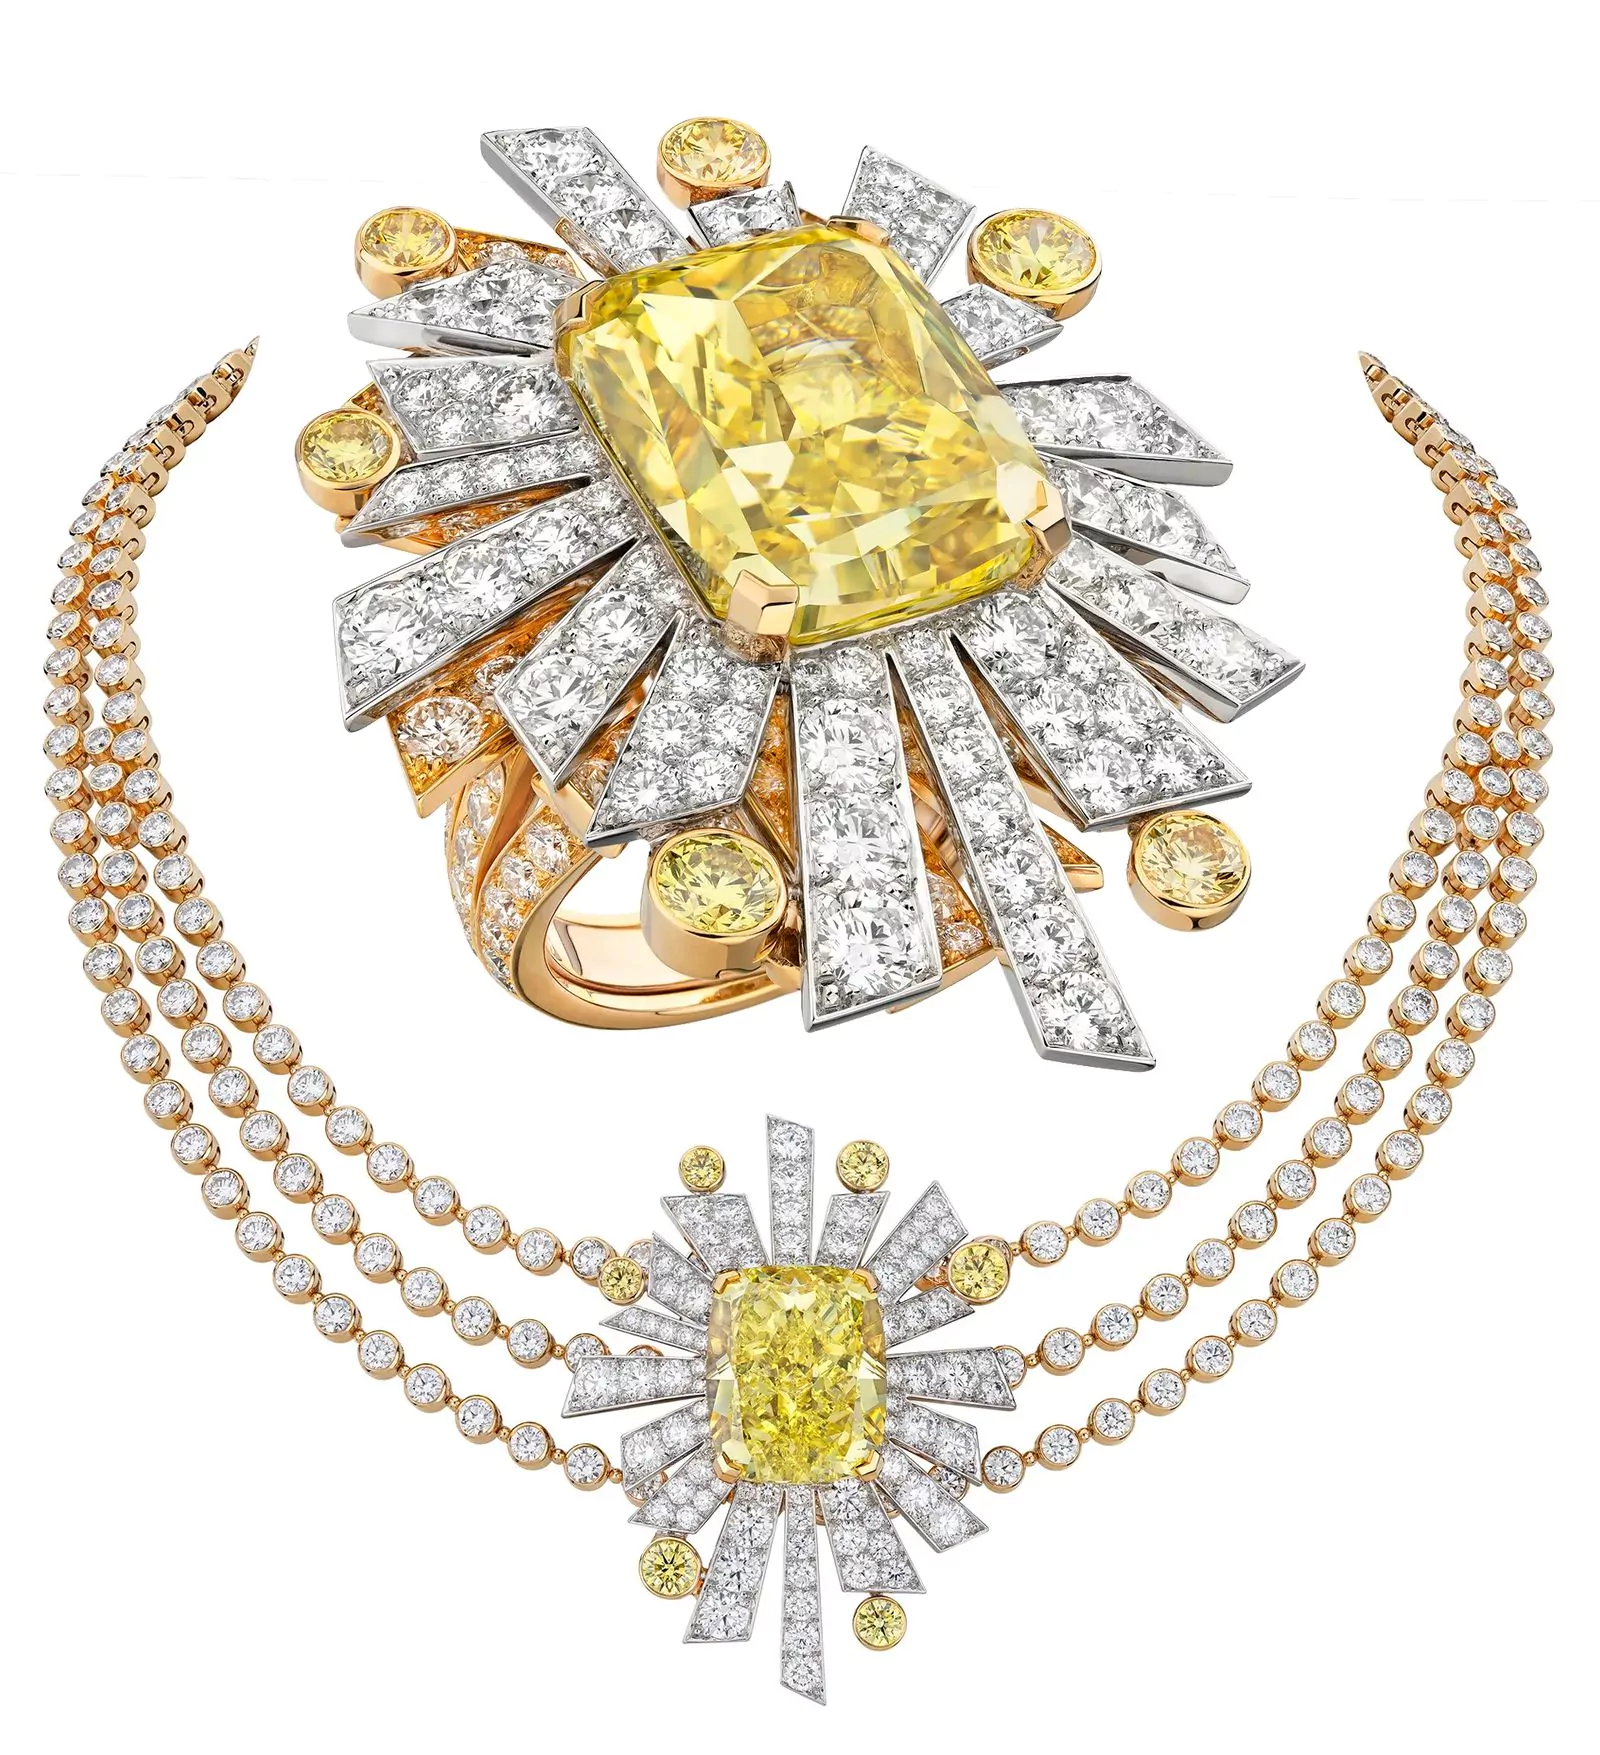 Кольцо, ожерелье Soleil 19 Août из коллекции «1932» Chanel